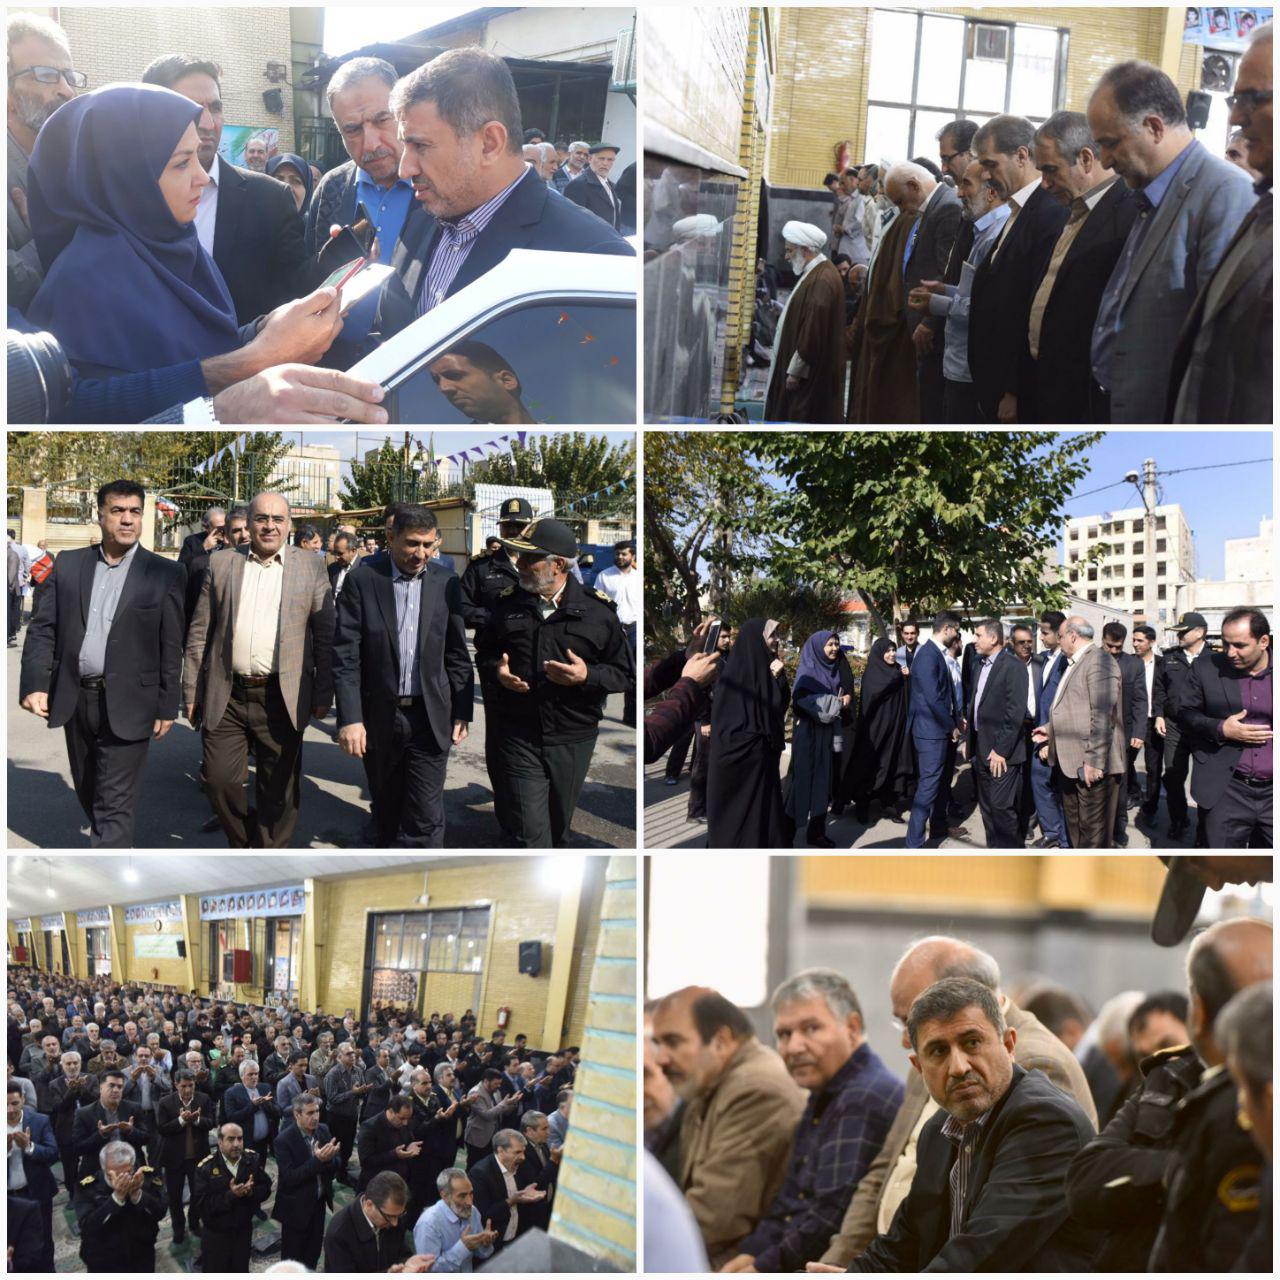 کرج - ایرنا - استاندار البرز اعلام کرد که مراحل تعیین وضعیت شهردار منتخب فردیس در حال انجام است.